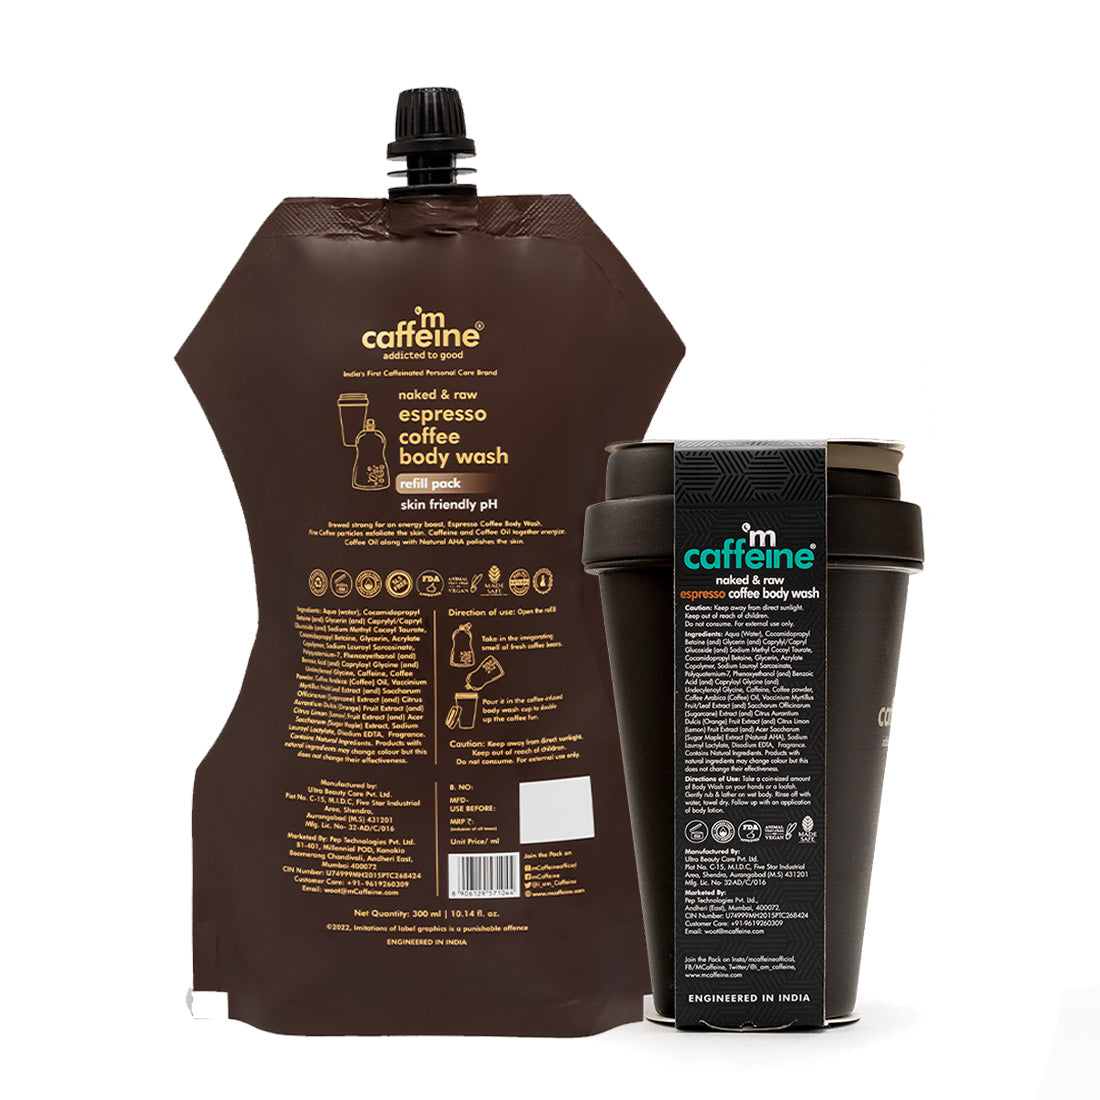 mCaffeine Naked & Raw Coffee Espresso Body Wash + Espresso Coffee Body Wash Refill Pouch Duo